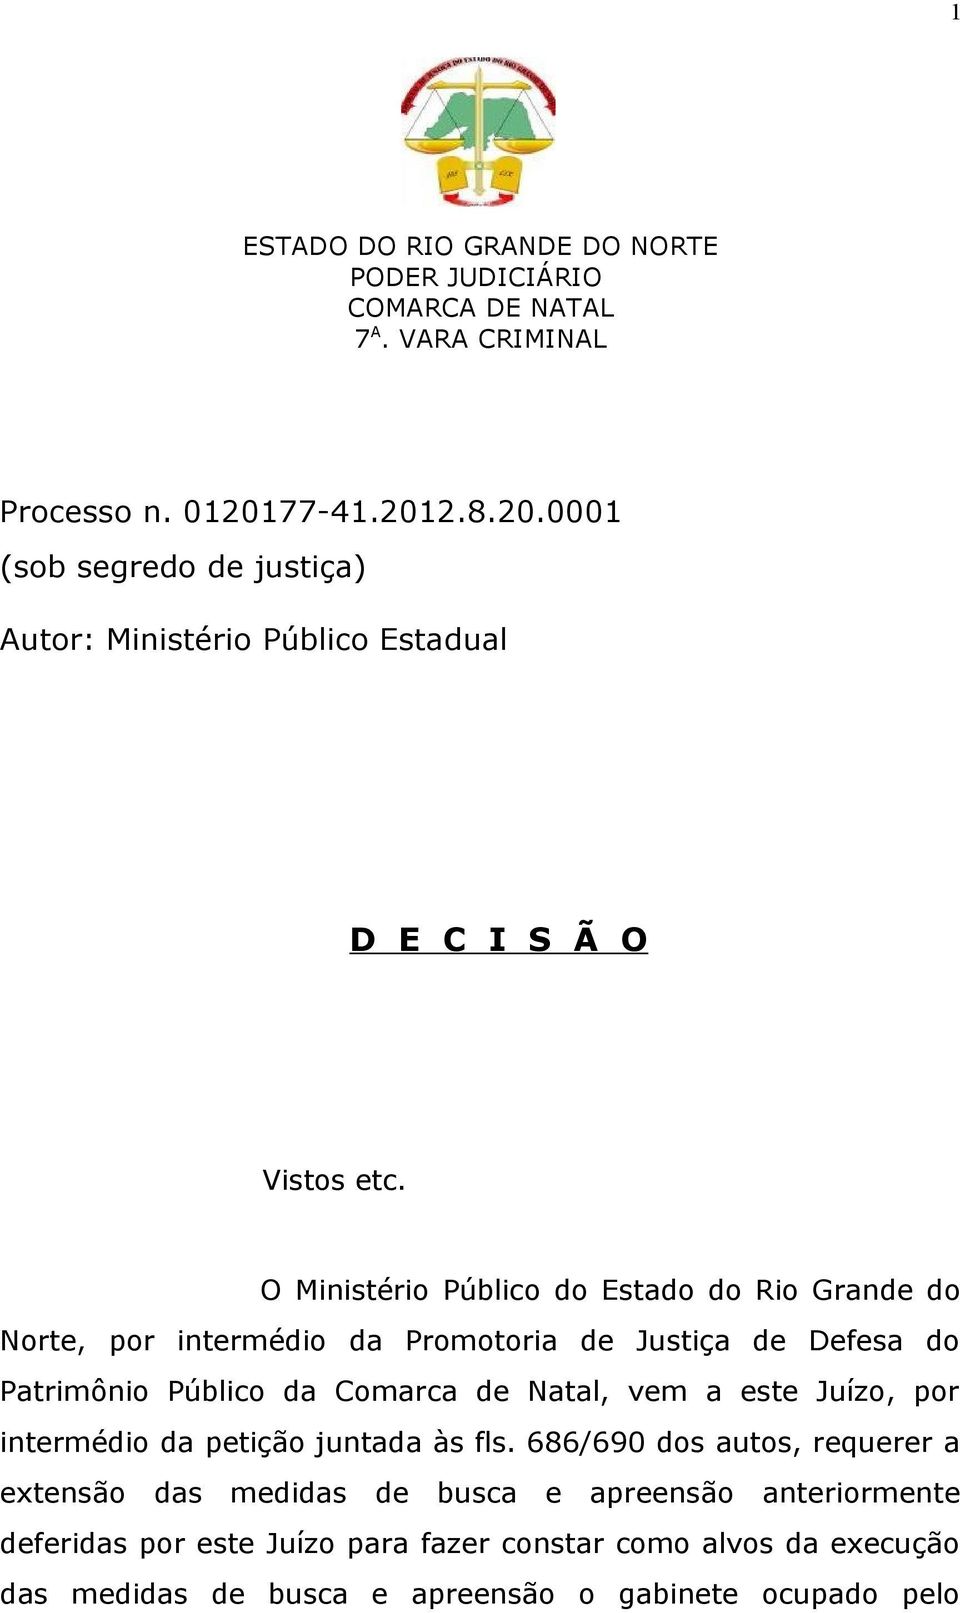 O Ministério Público do Estado do Rio Grande do Norte, por intermédio da Promotoria de Justiça de Defesa do Patrimônio Público da Comarca de Natal, vem a